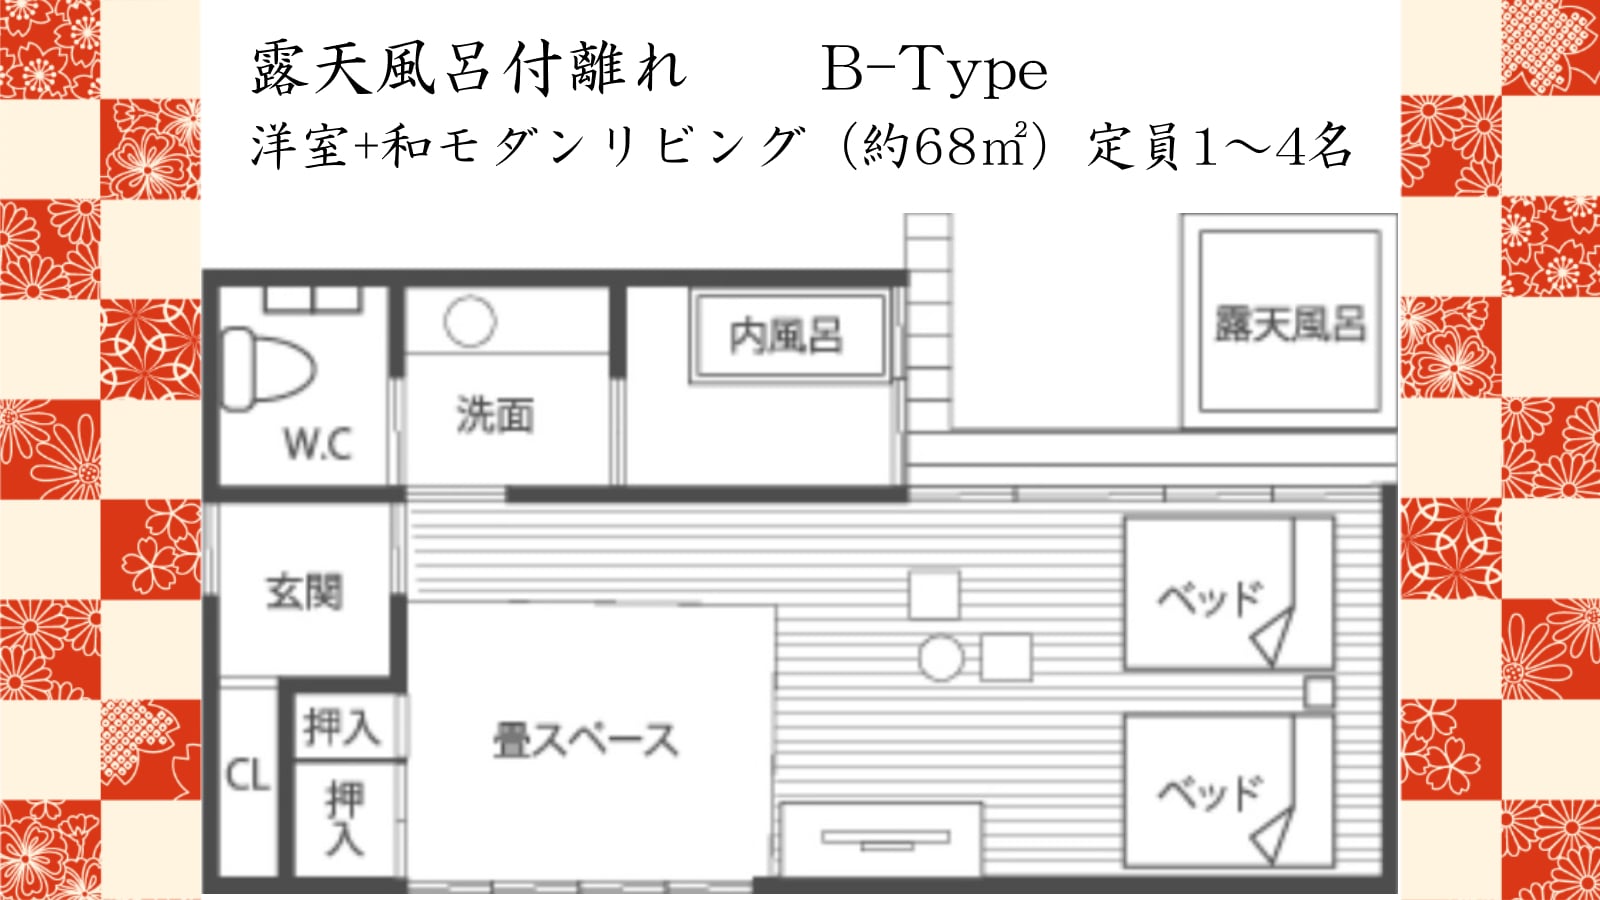 ■ B type floor plan